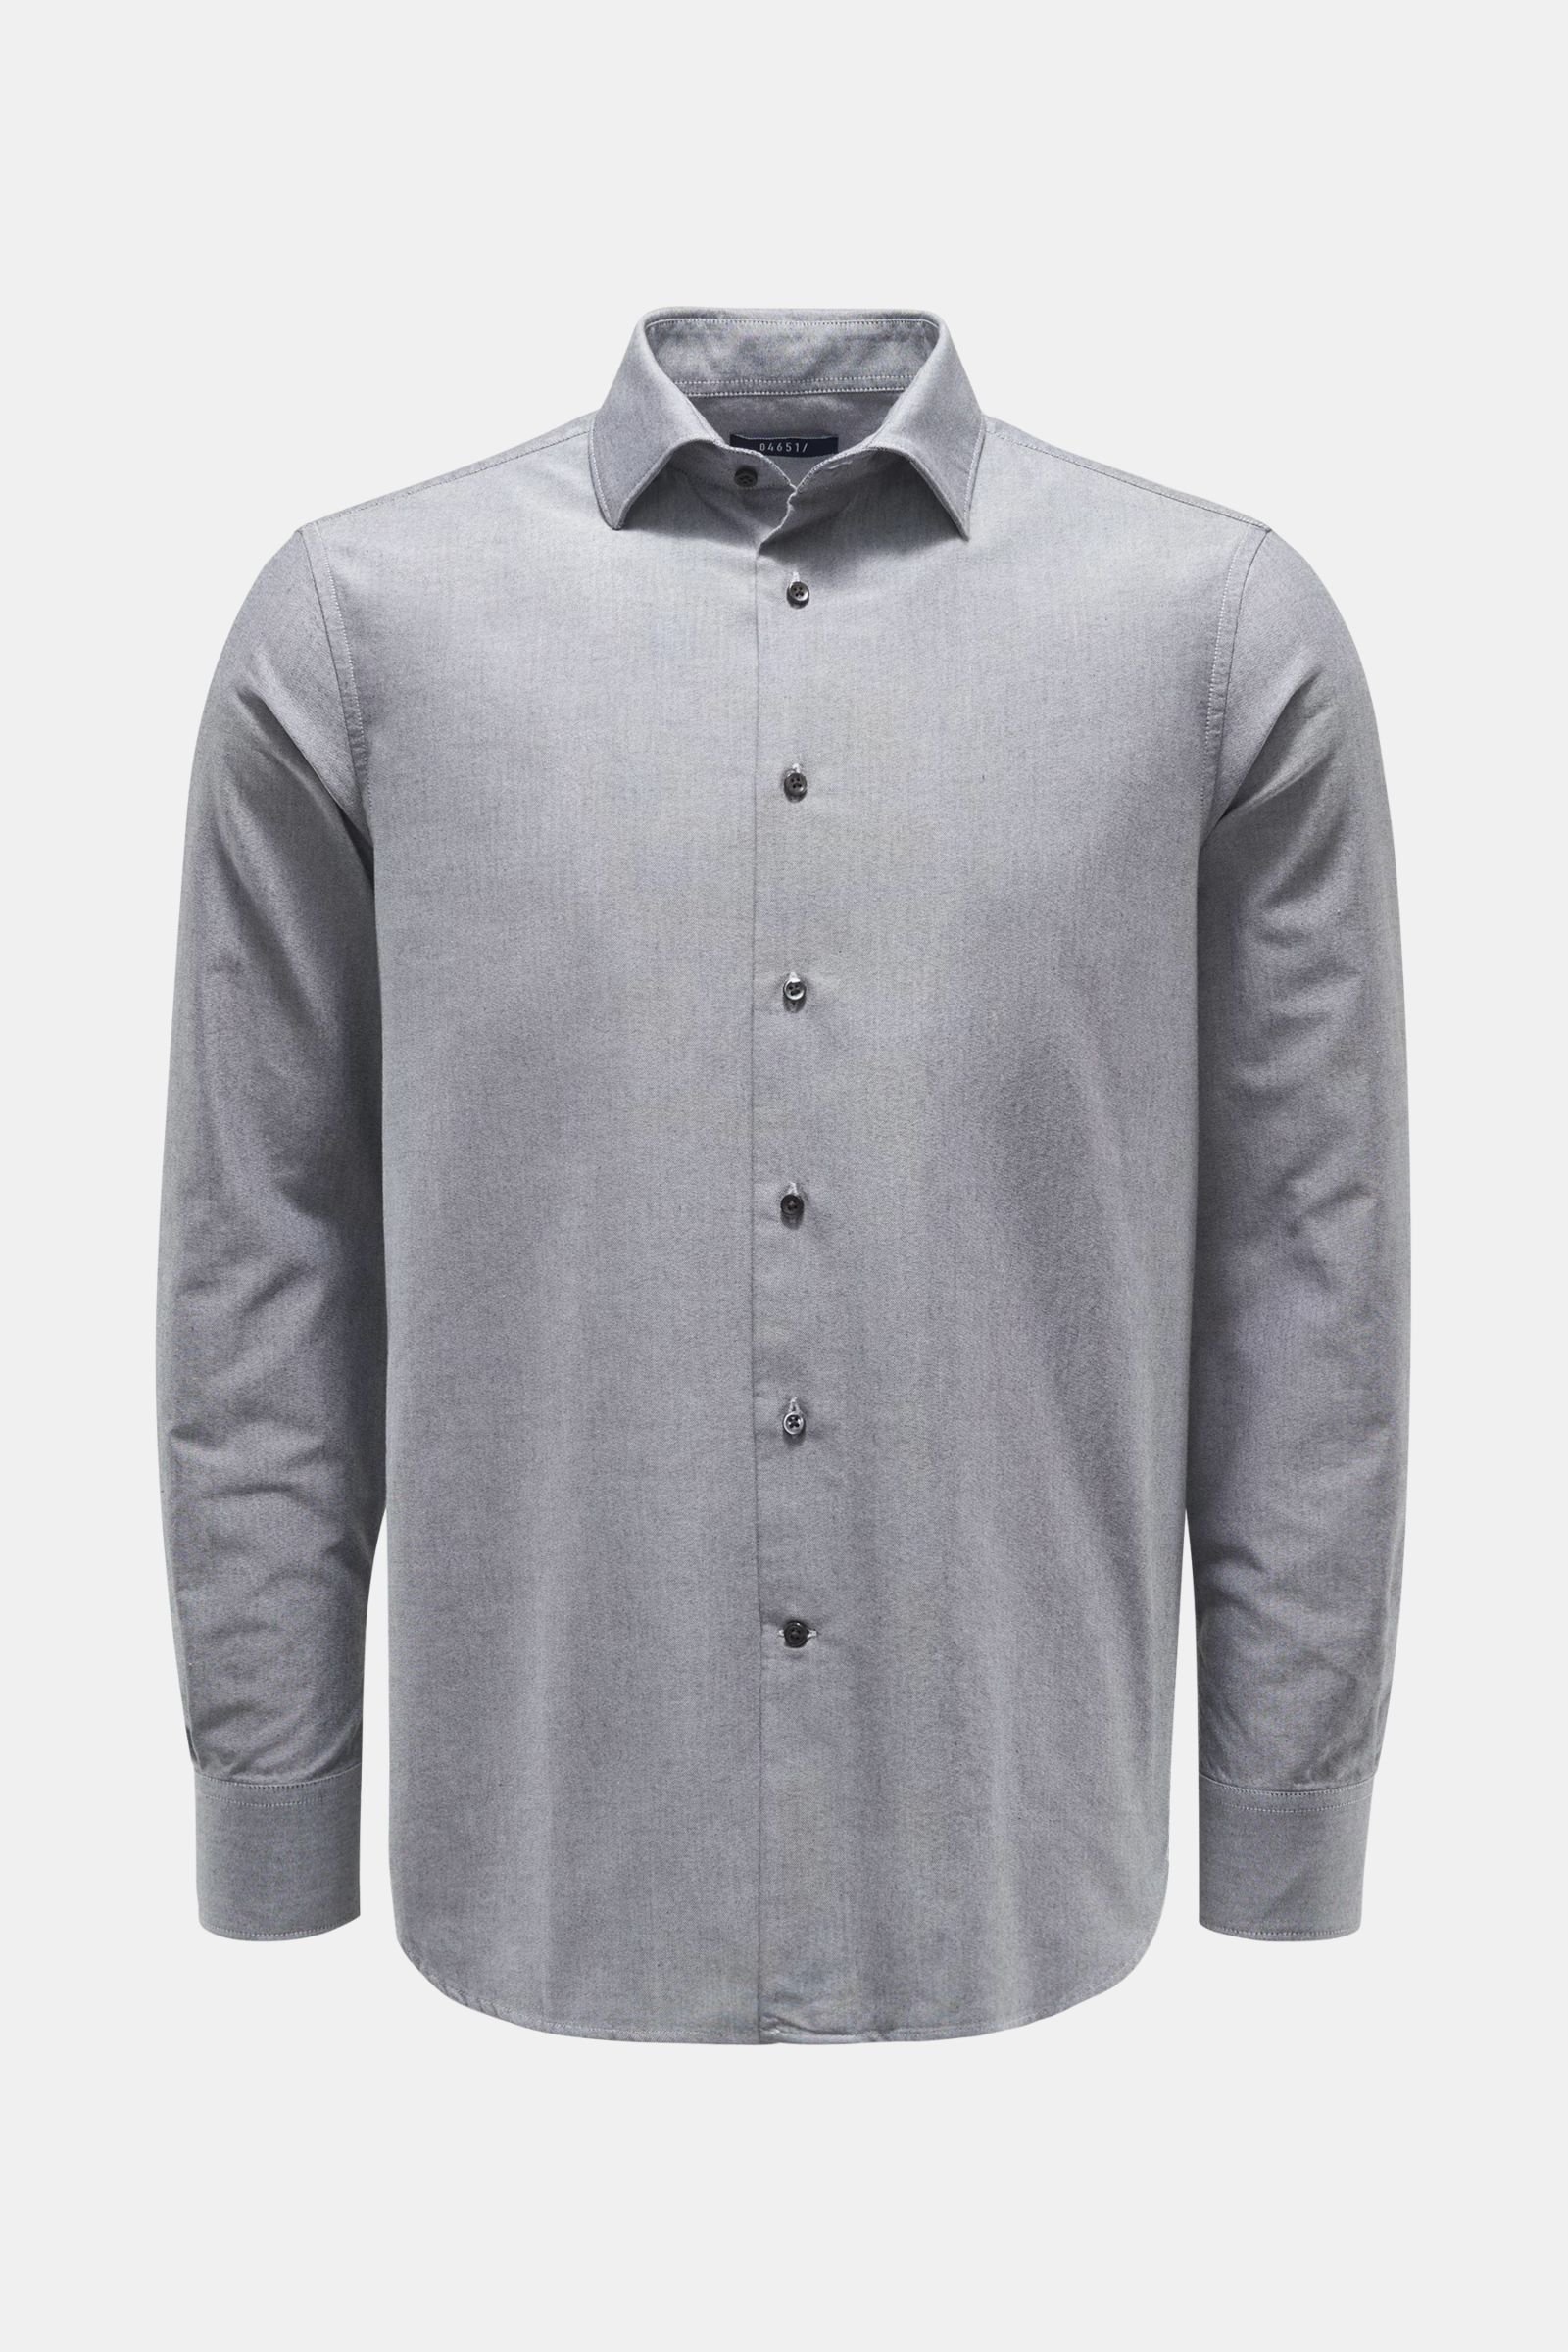 Oxford shirt Kent collar grey